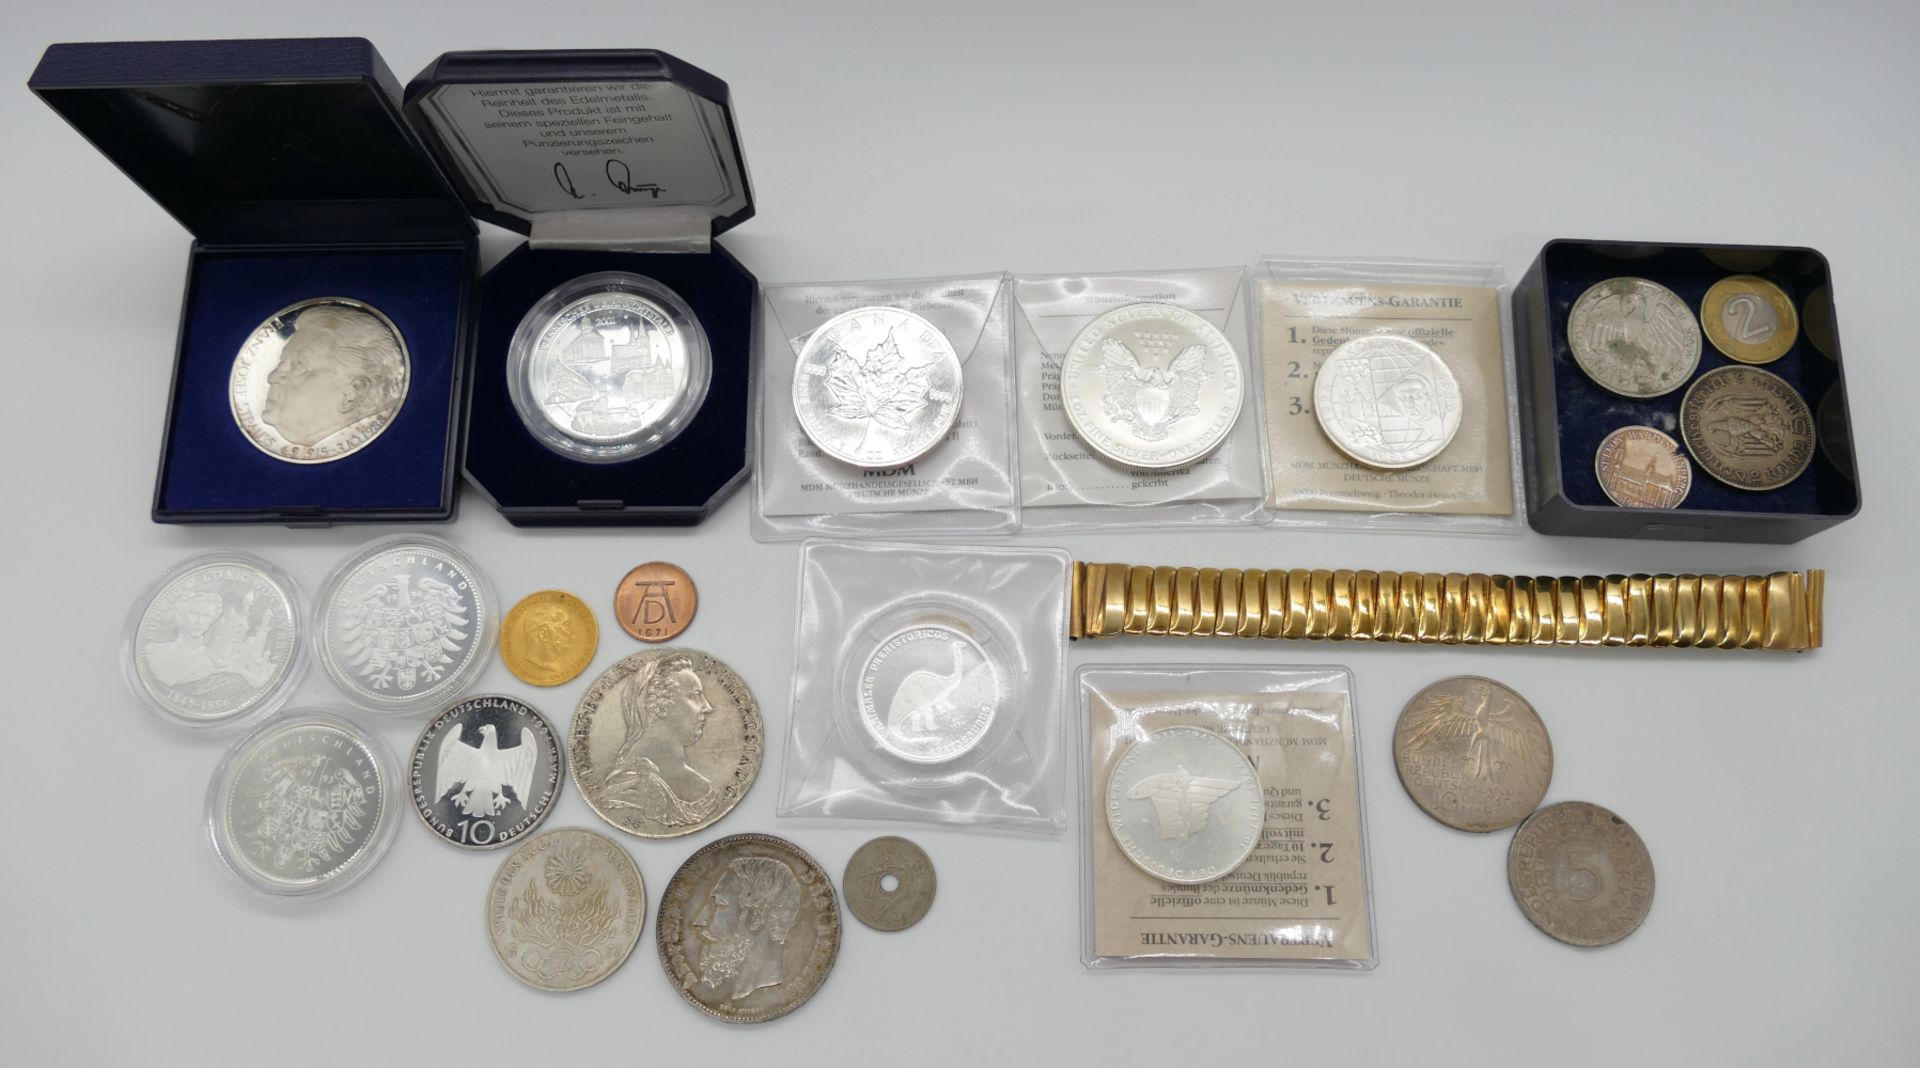 1 Münze GG Österreich 20 Cor, 1 Konv. Münzen/Medaillen: Silber, Metall u.a., BRD 5/10 DM, Dt. Reich,